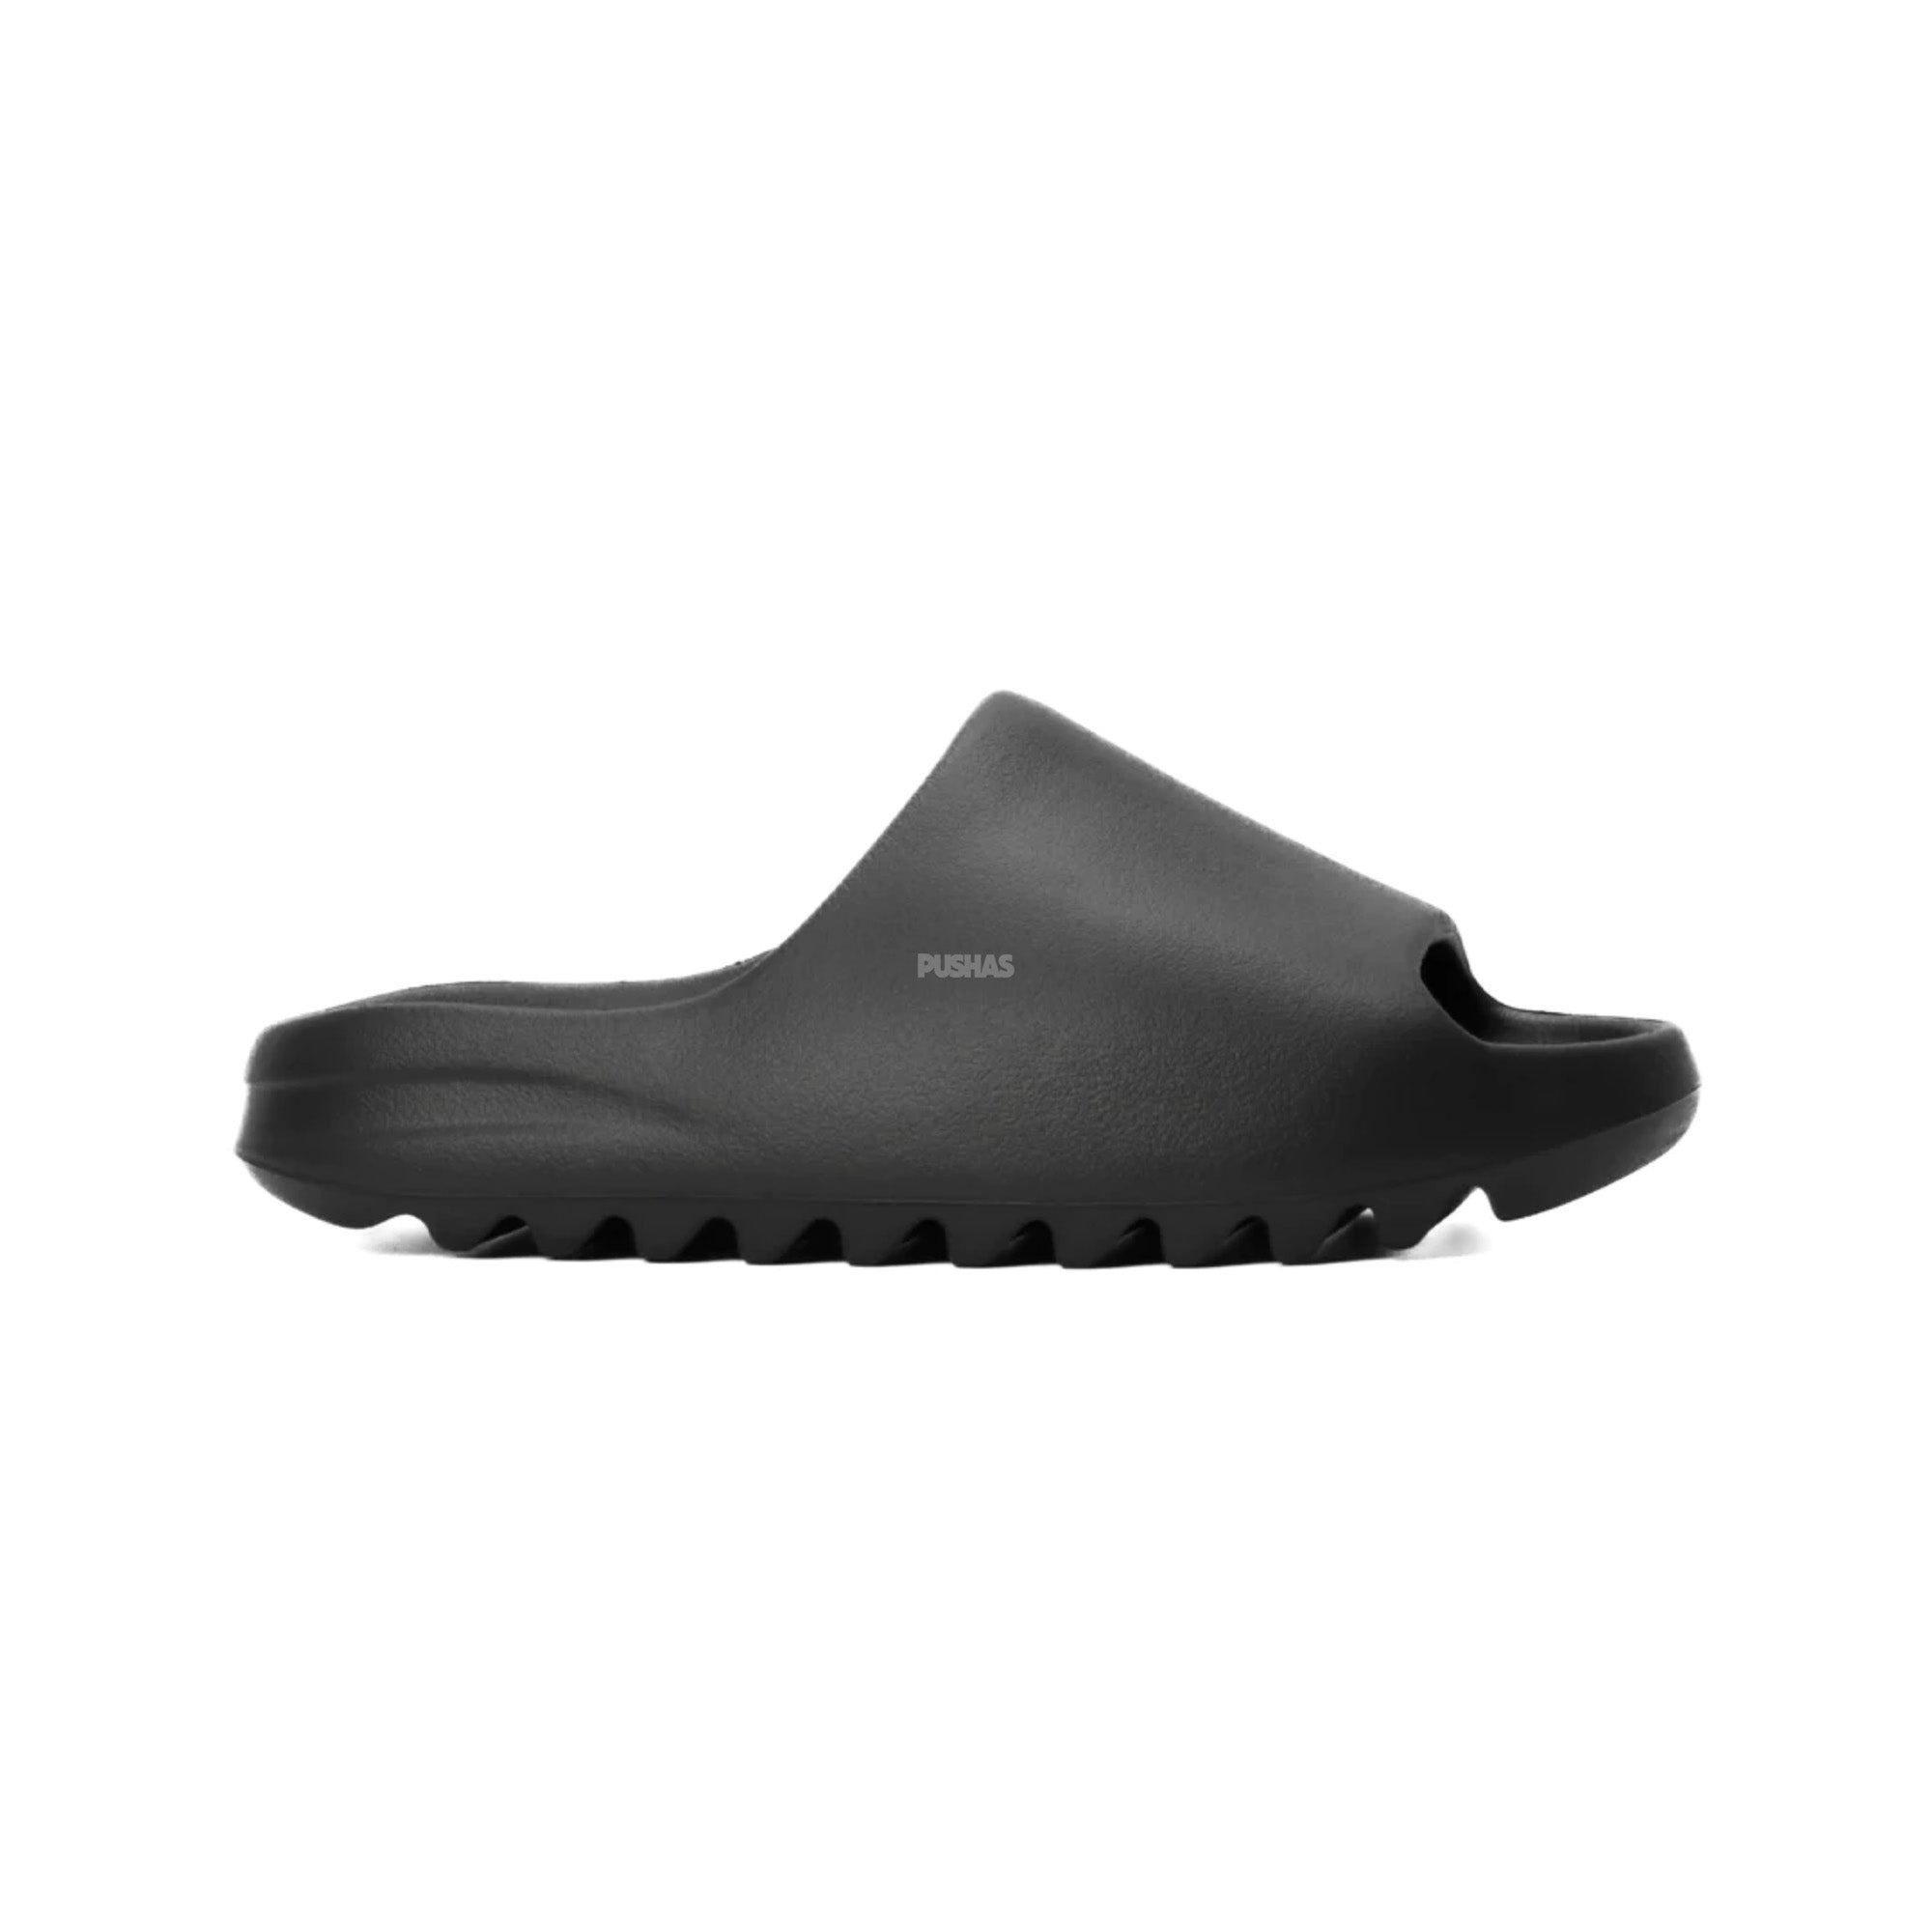 Buy Adidas Yeezy Slides 'Onyx' – PUSHAS